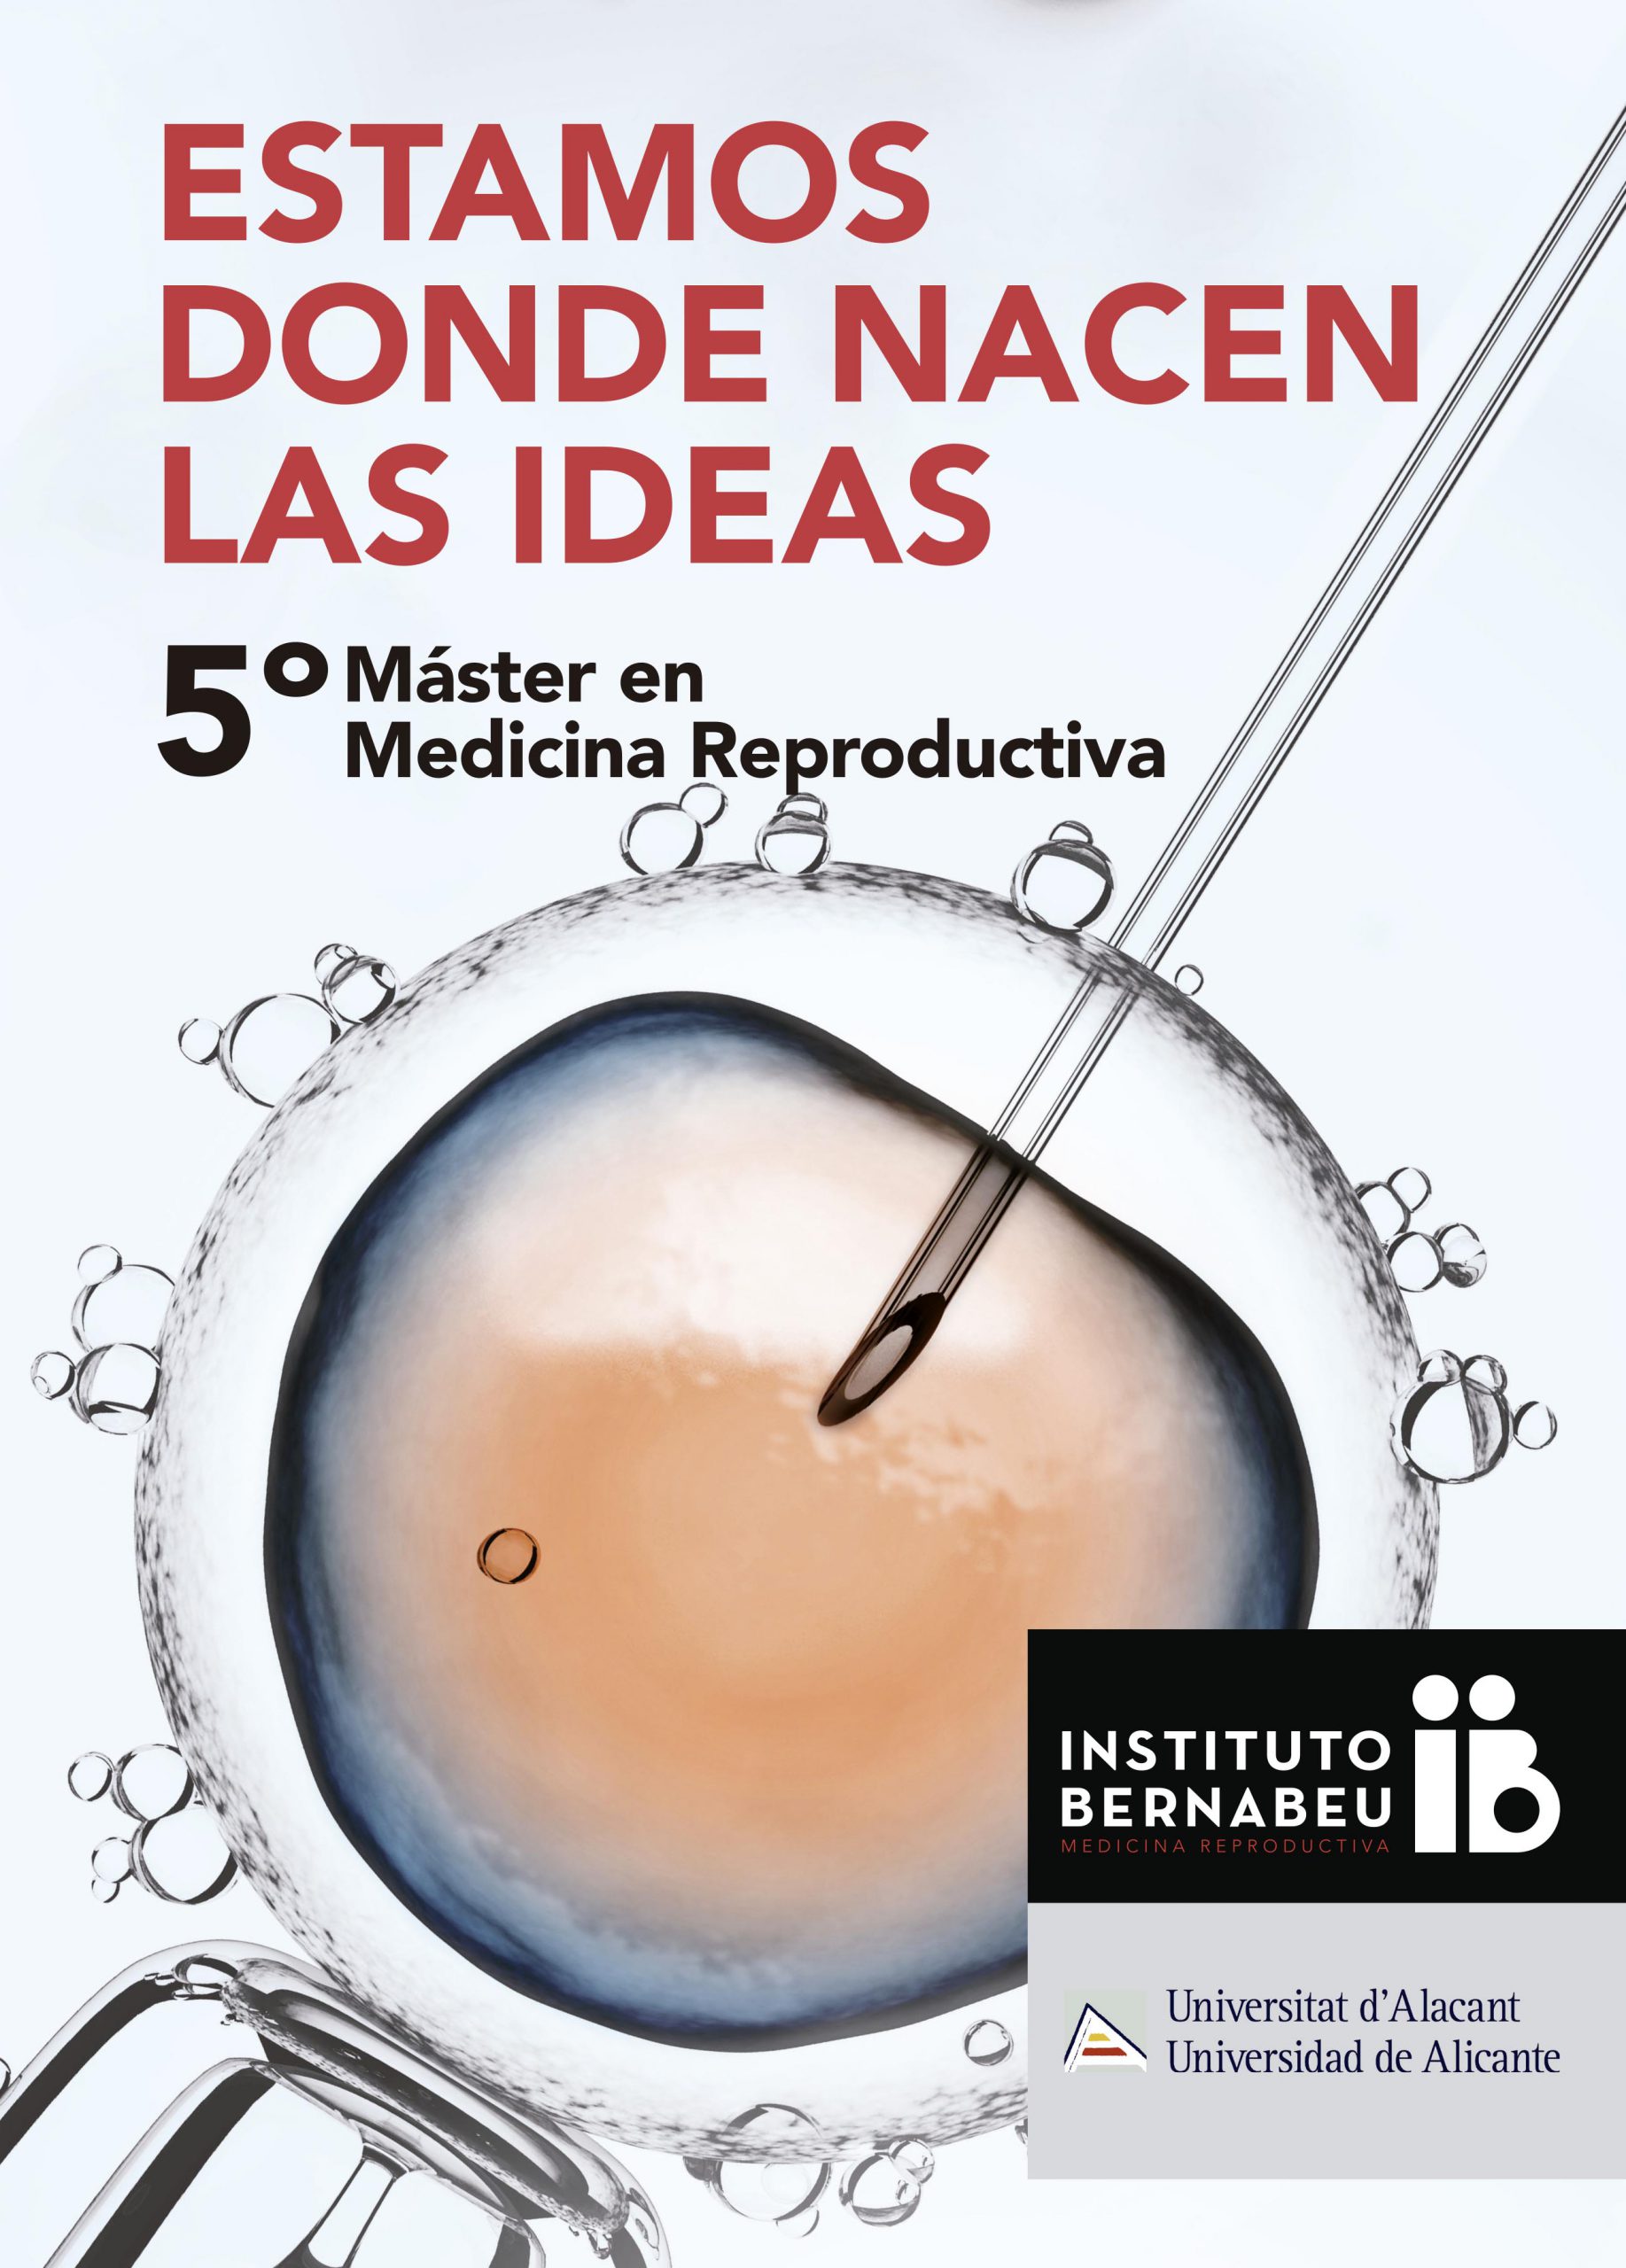 V Máster en Medicina Reproductiva Universidad de Alicante — Instituto Bernabeu